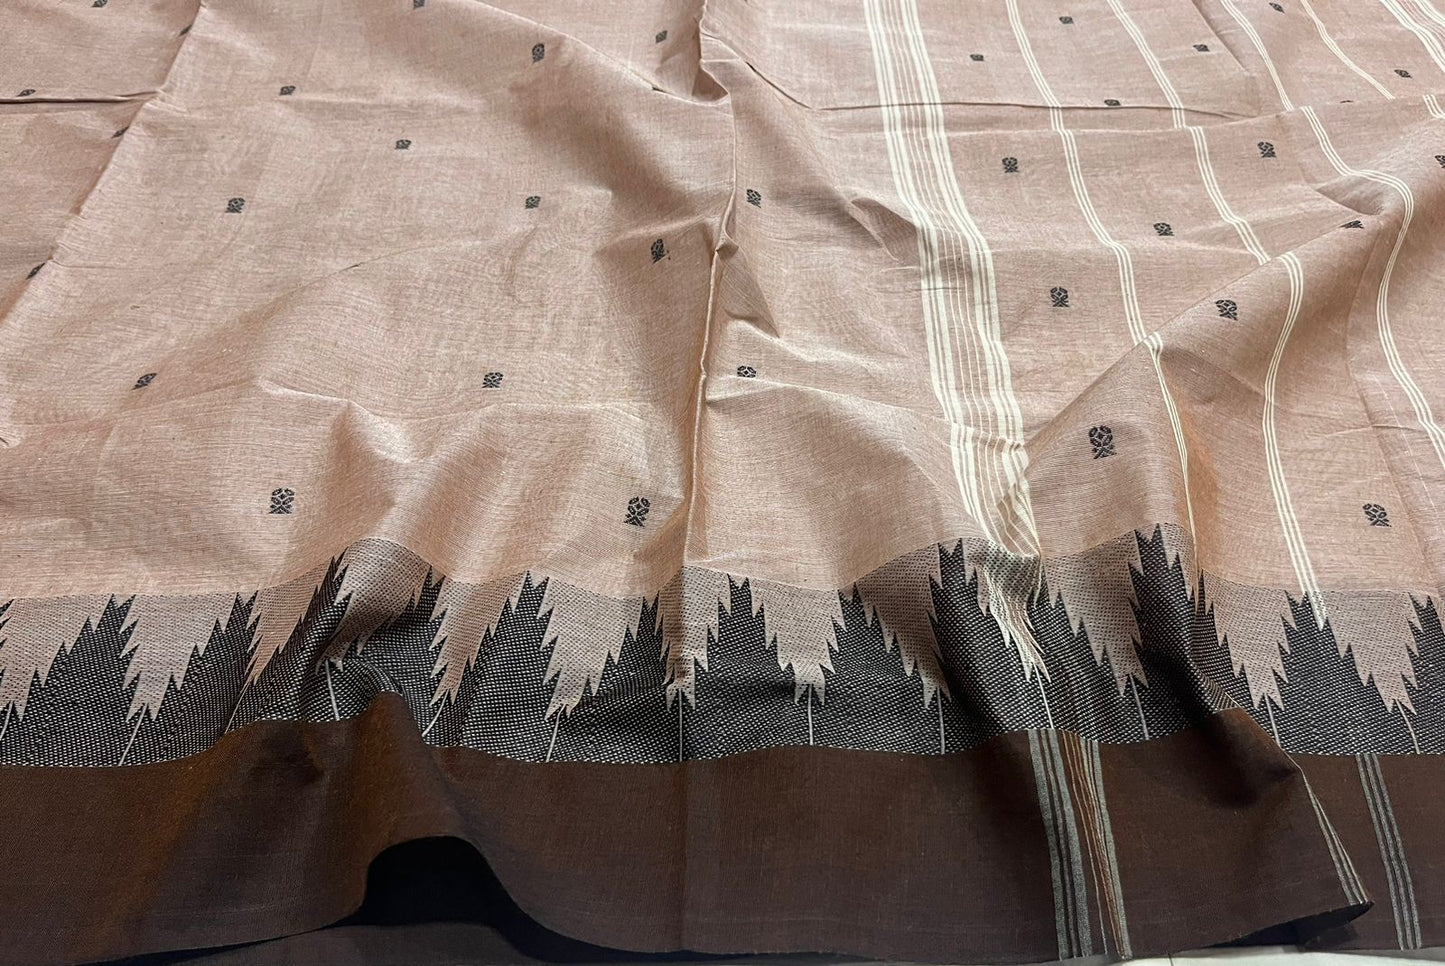 Thread tower butta chettinad cotton saree